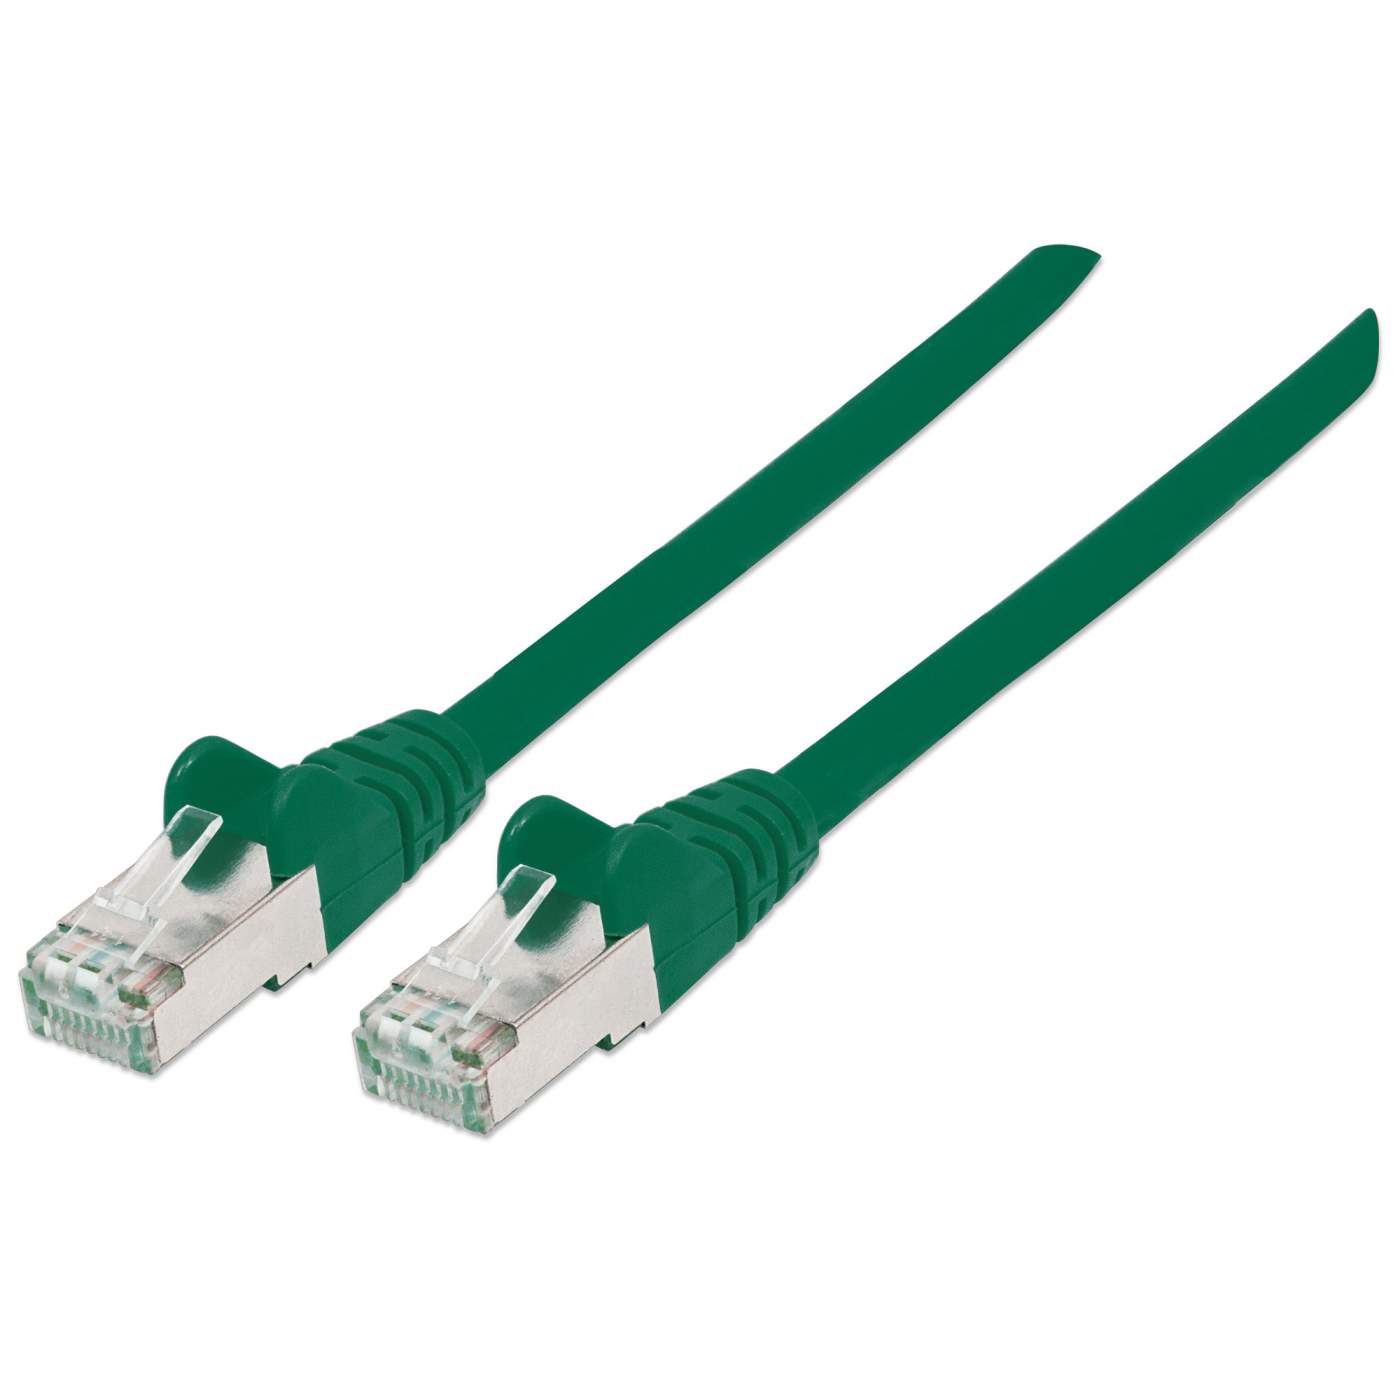 Netzwerkkabel mit Cat6a-Stecker und Cat7-Rohkabel, S/FTP Image 1